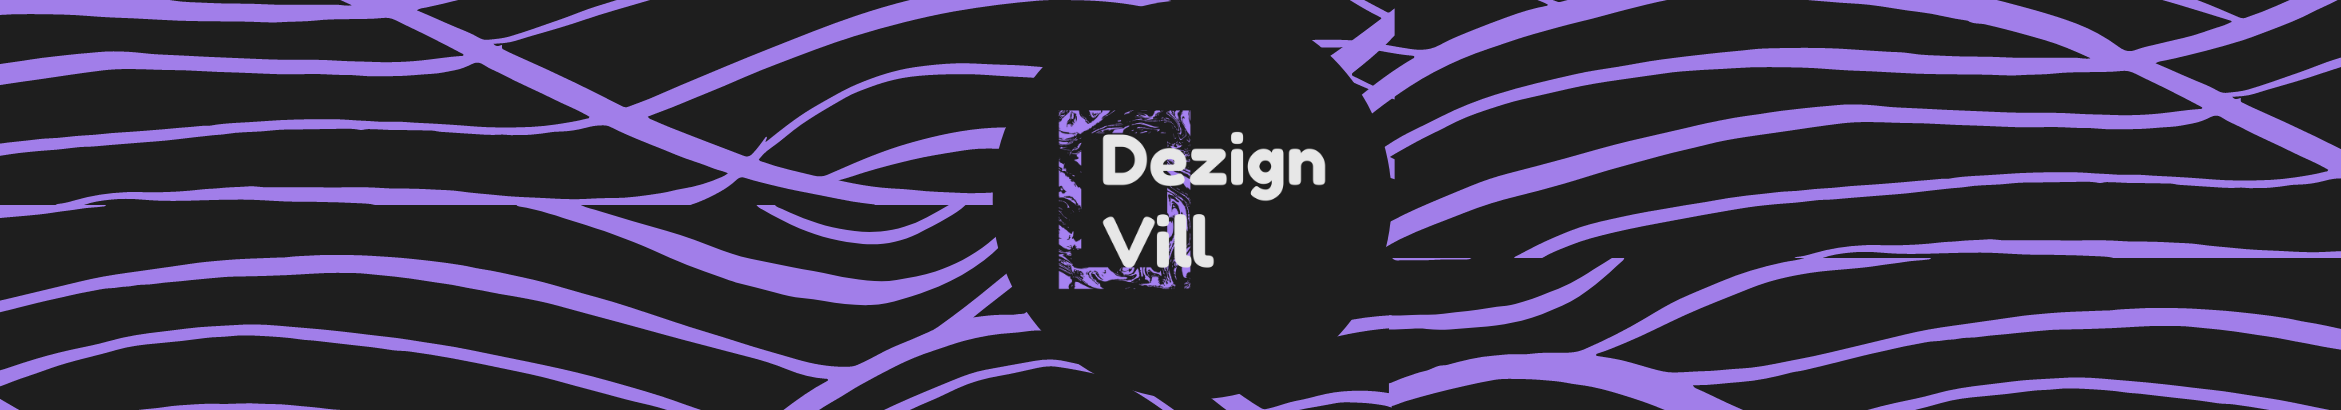 Dezign Vill's profile banner